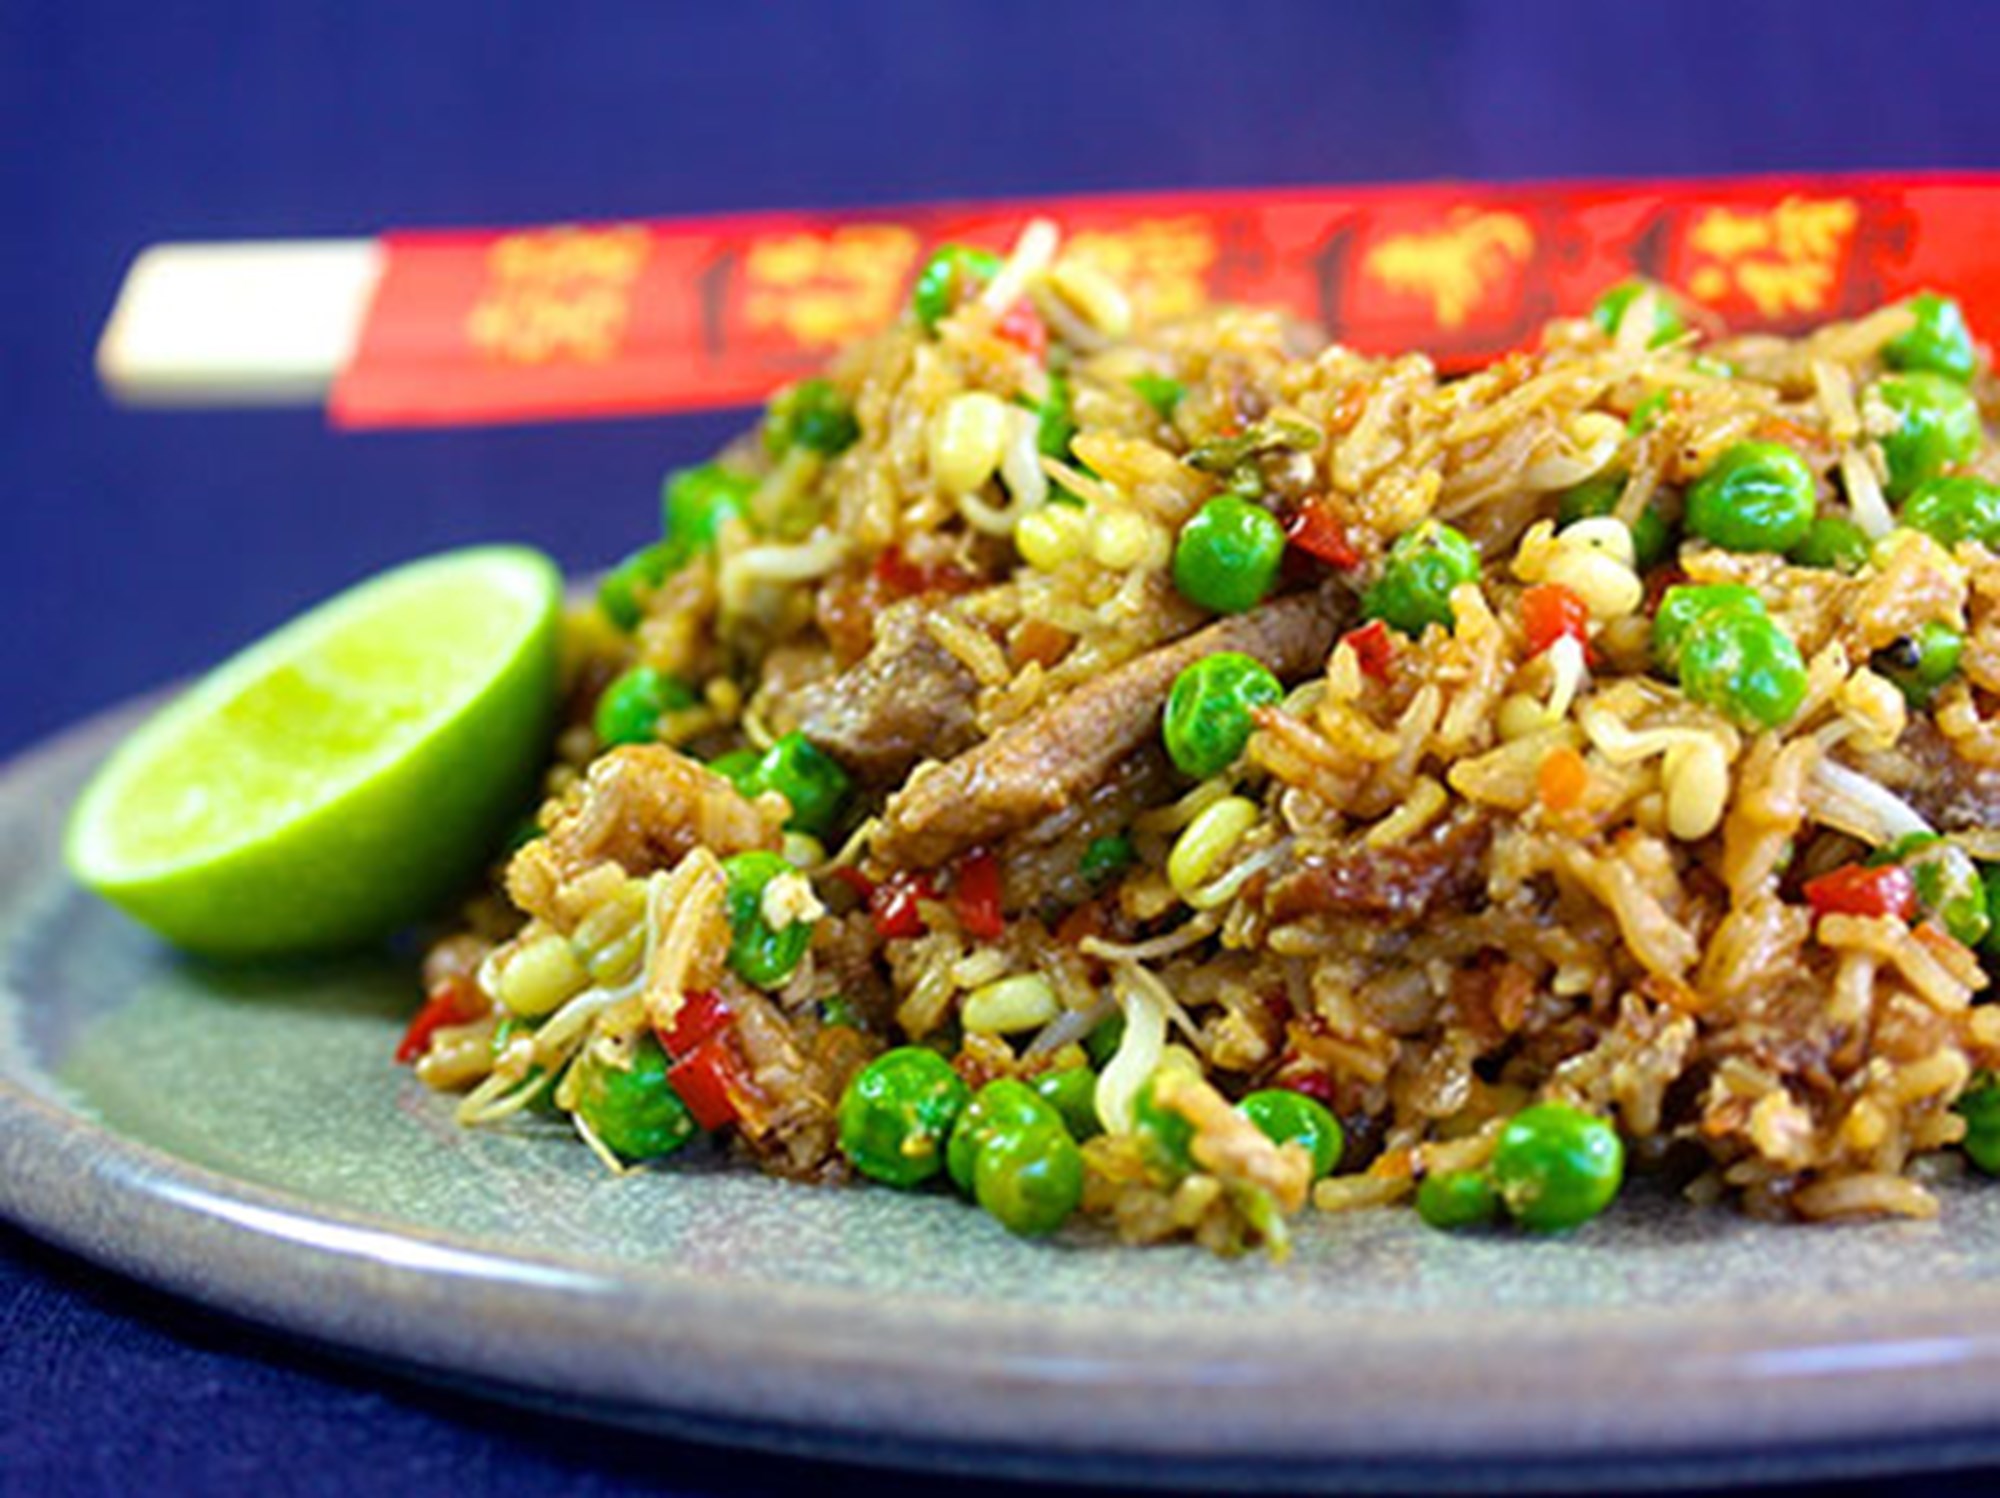 Stegte ris ”Tikka” med svinekød, og grøntsager